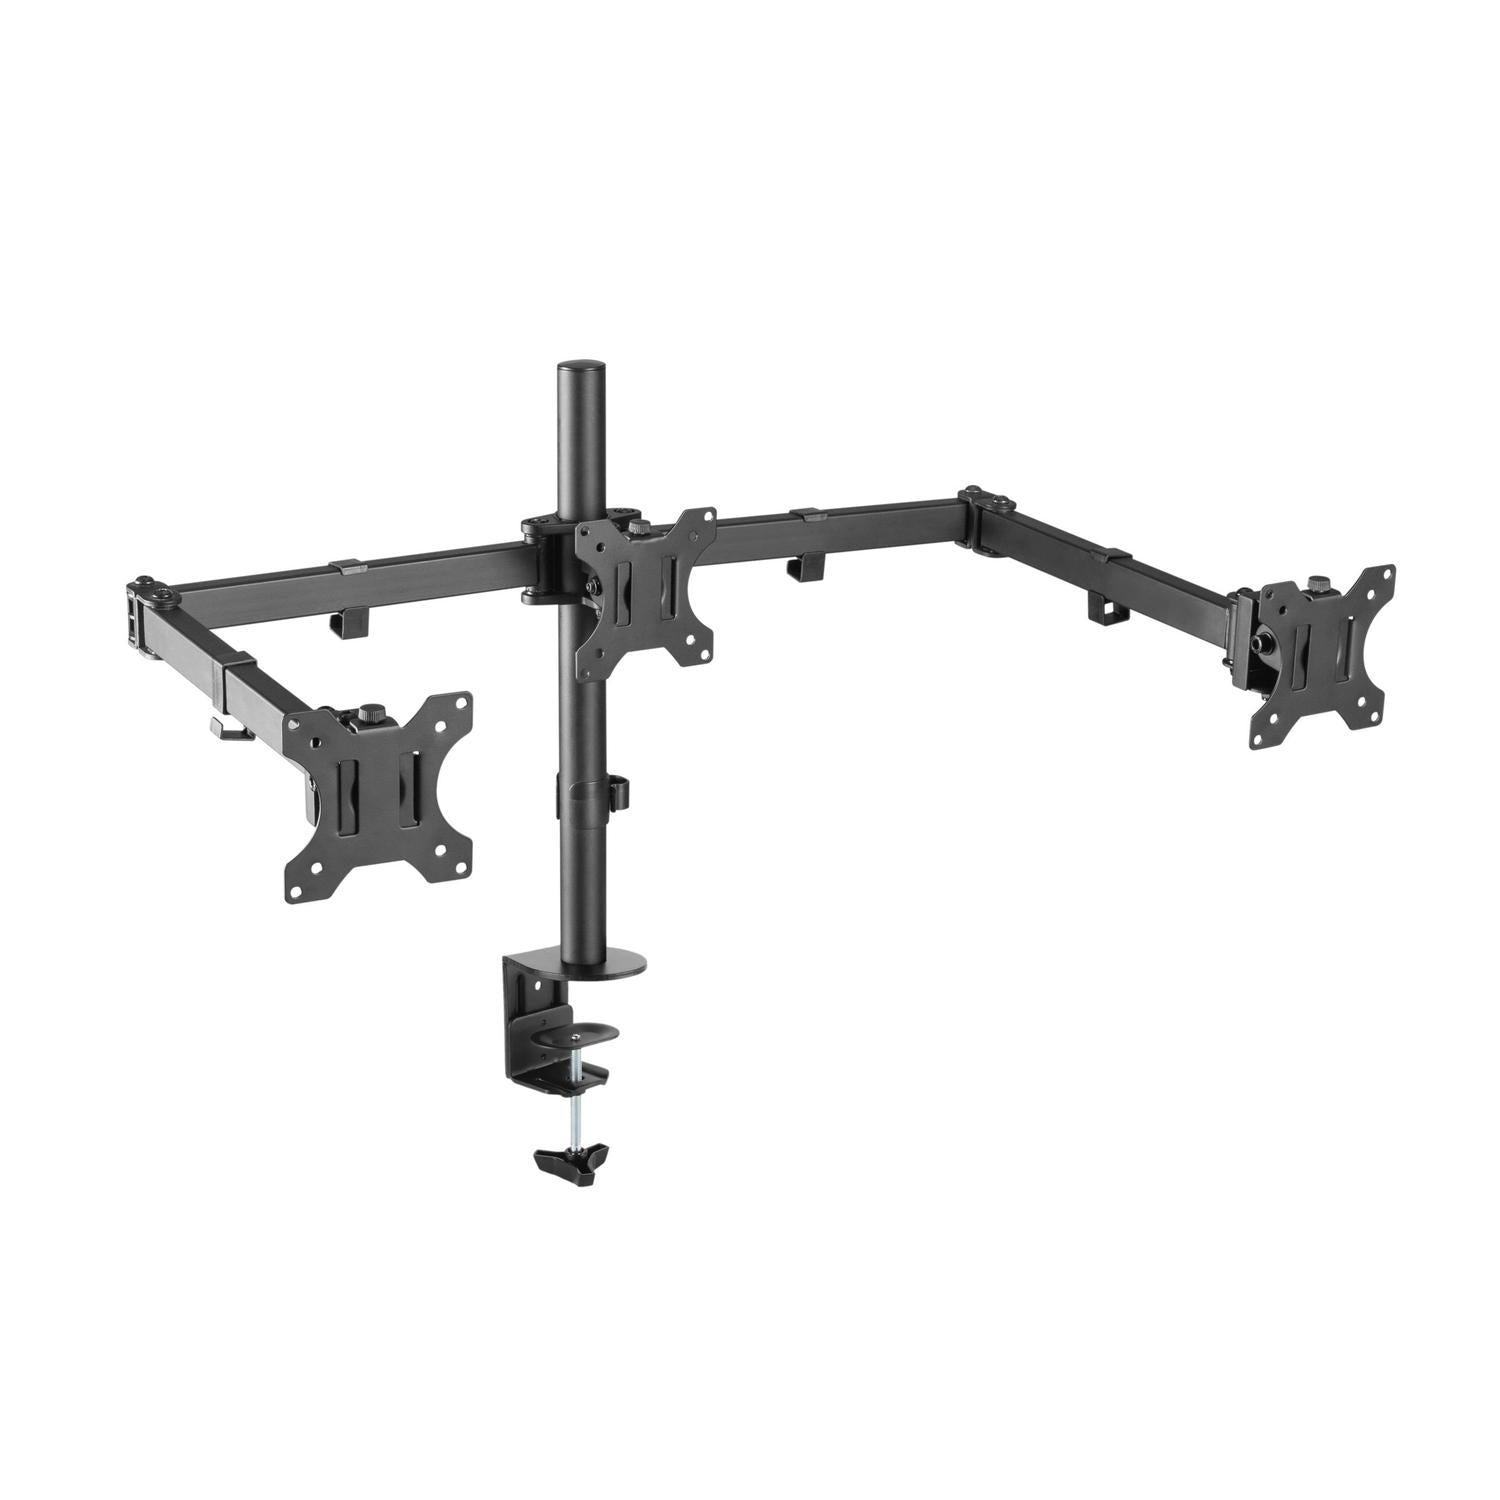 NÖRDIC Monitorarm Table Bracket for tripper skjermer 13-27 tommer i stål, vippbar, roterbar og roterbar, svart, skjermbrakett